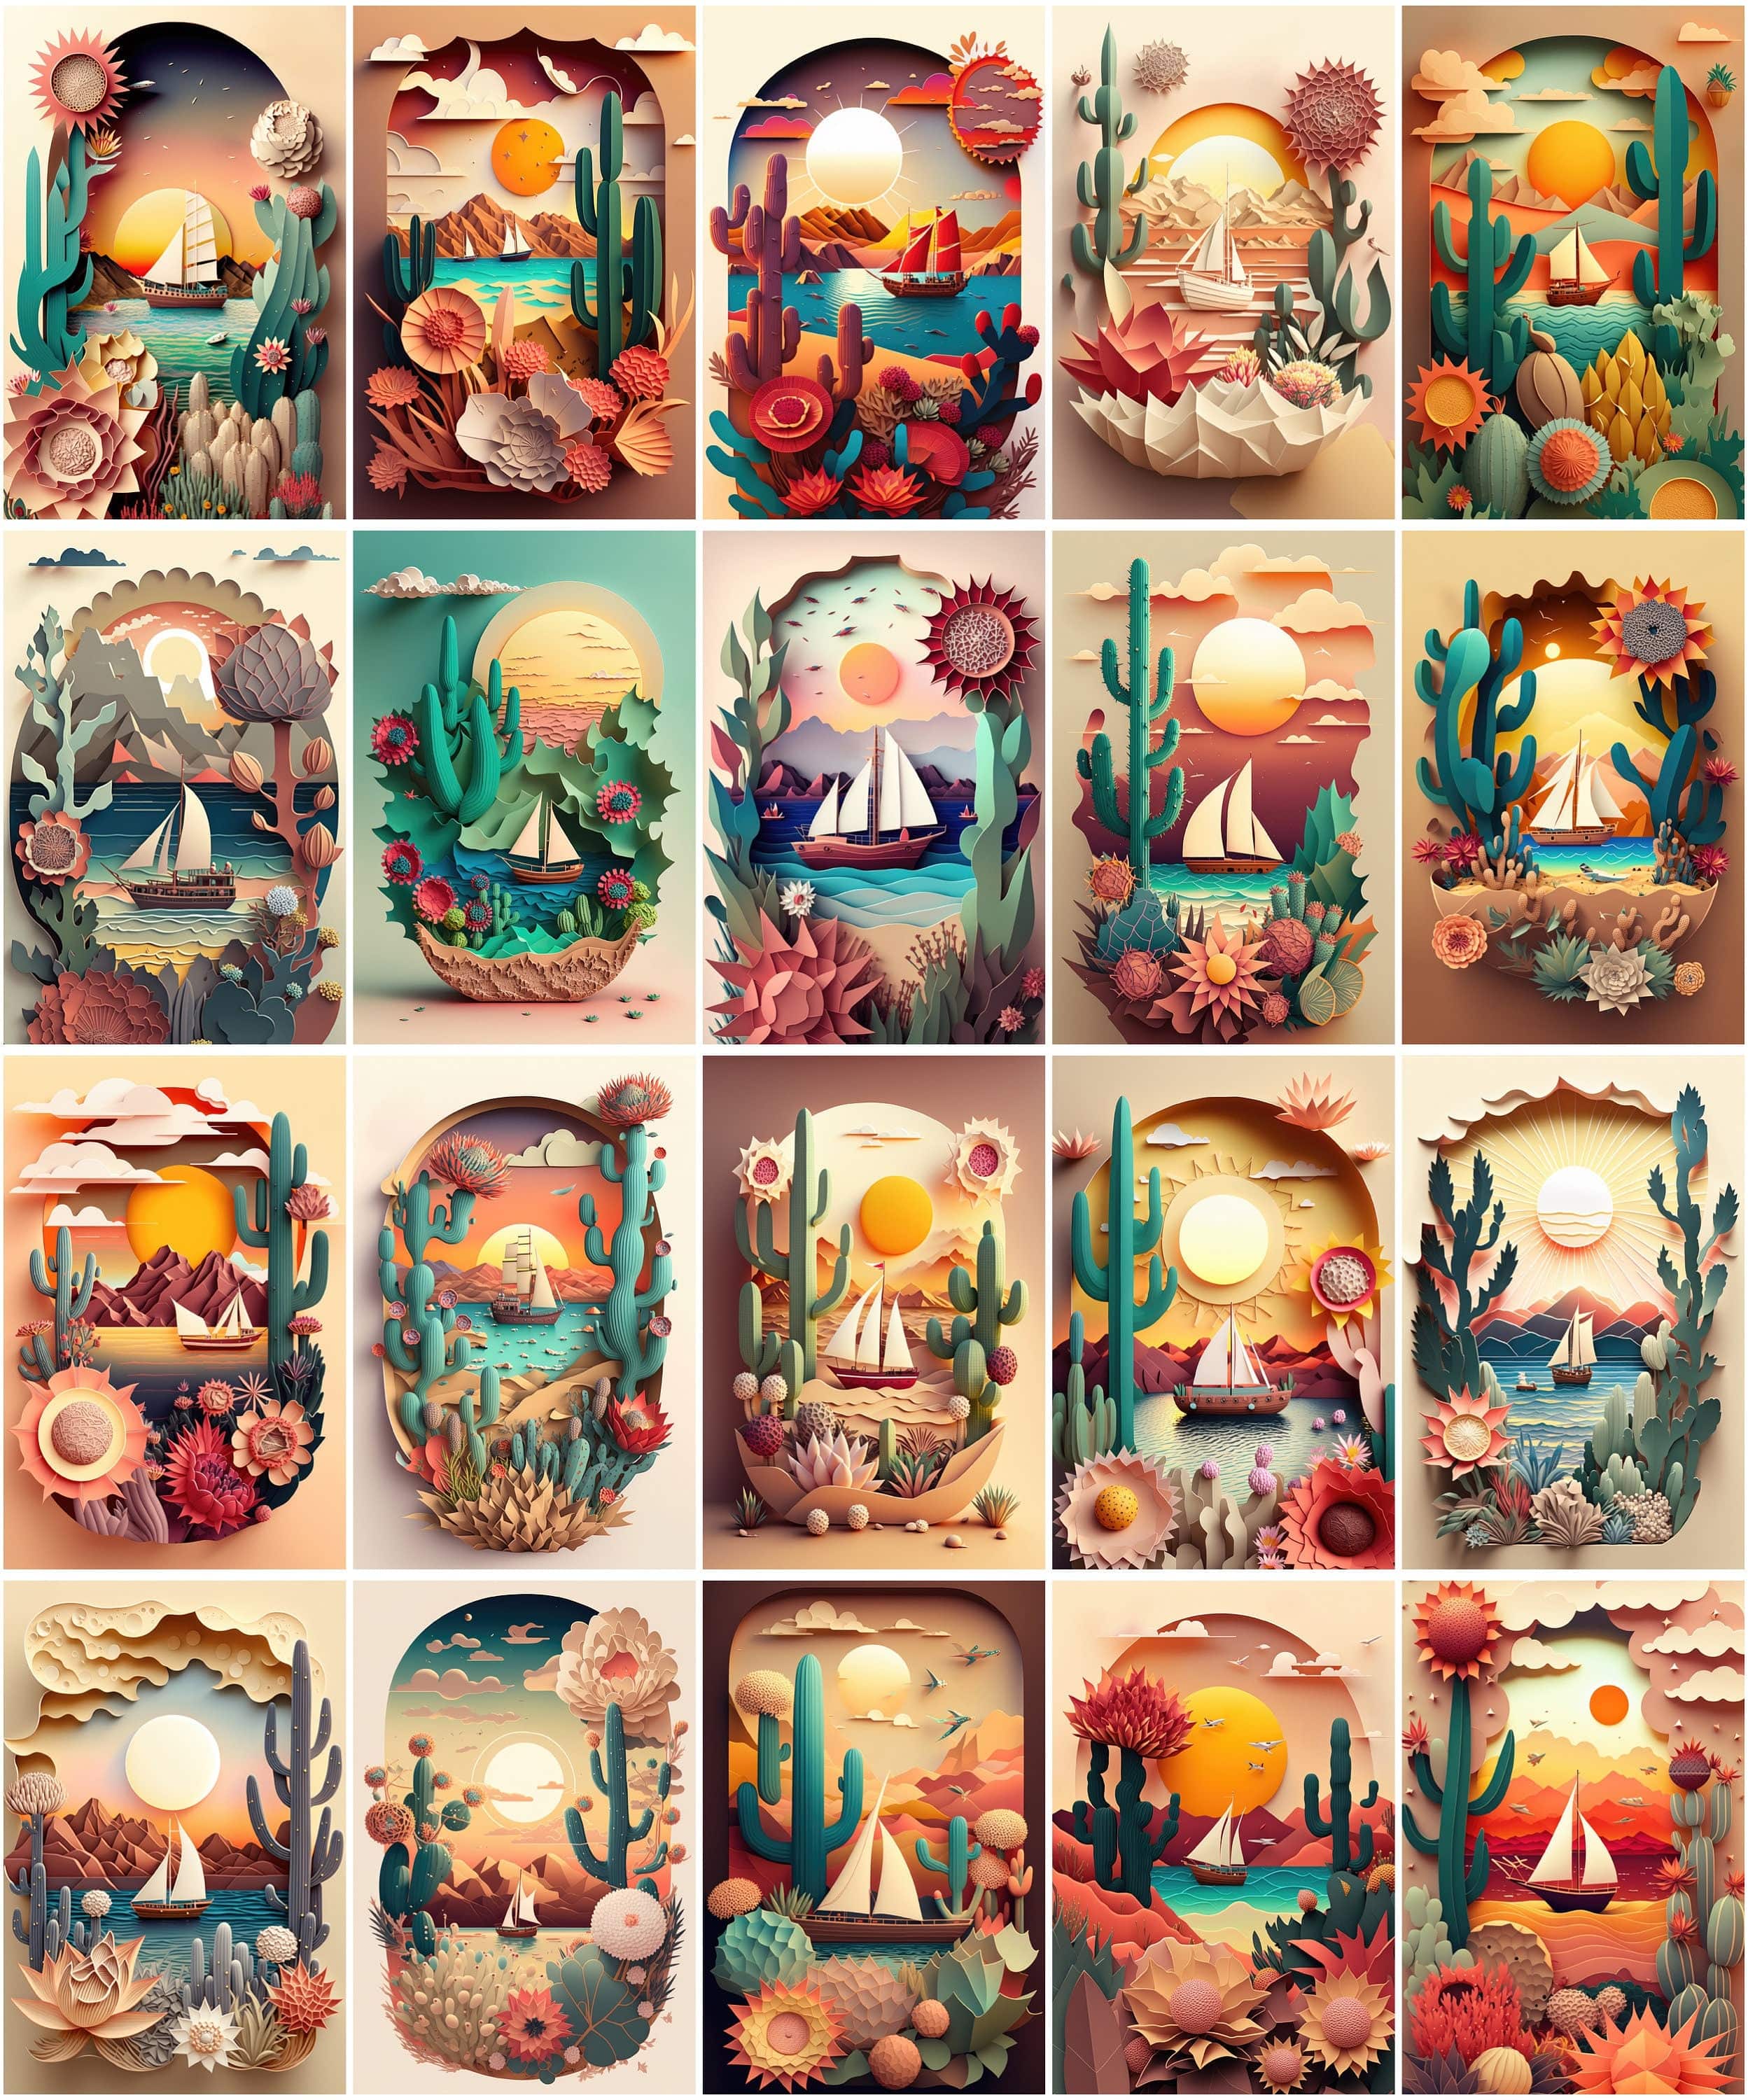 Dreamy Summer Paper Art Bundle - 75 Images - Sun, Sea, Boat, Plants, Cactus, Desert, Flowers, Auspicious Clouds - Paper Cuttings Collection Digital Download Sumobundle